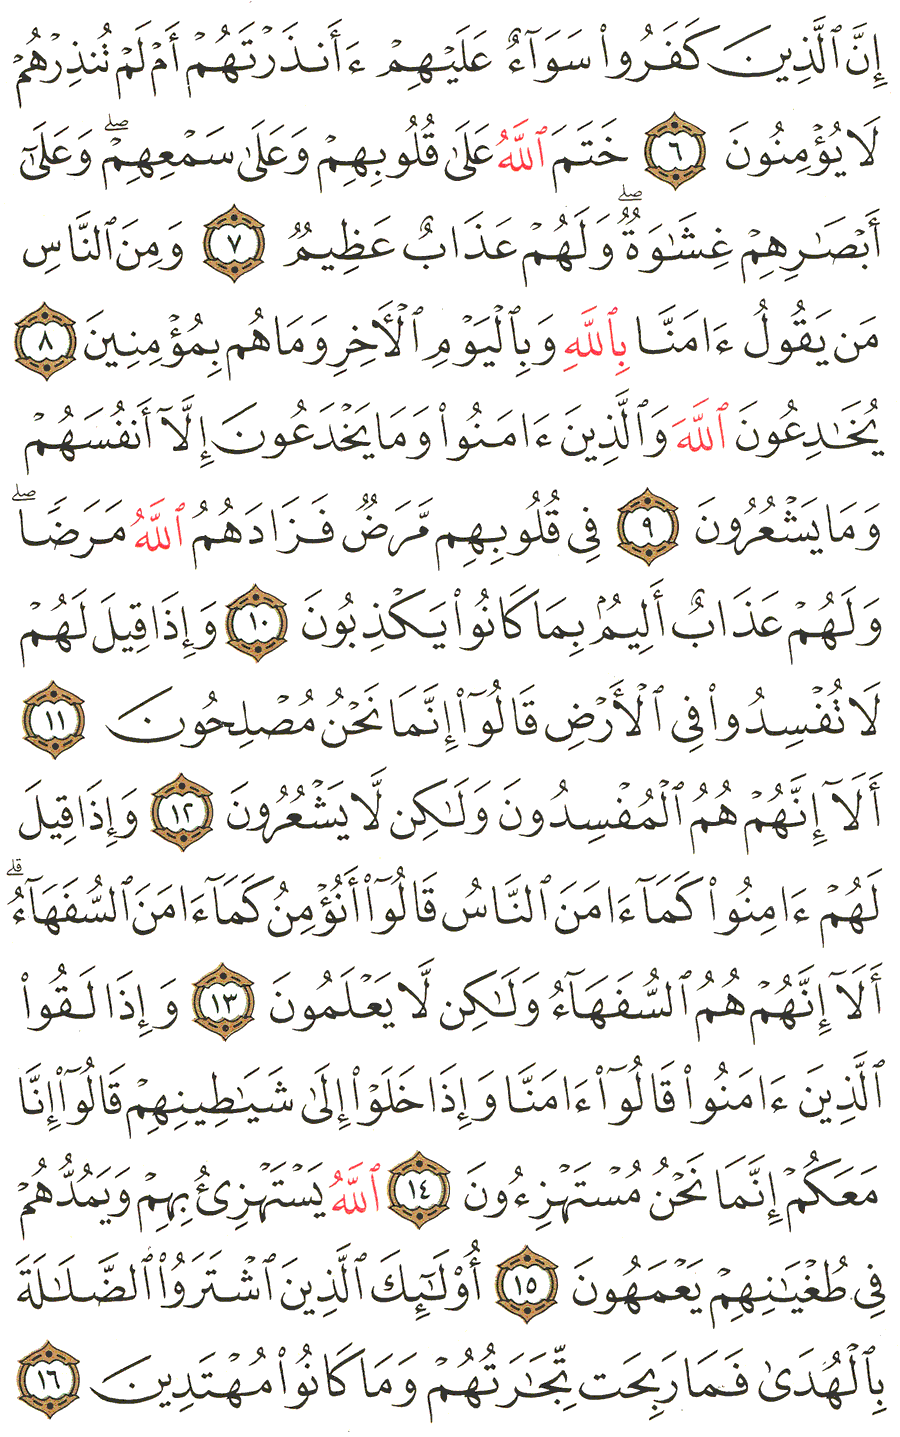 الصفحة رقم 3 من القرآن الكريم مكتوبة من المصحف